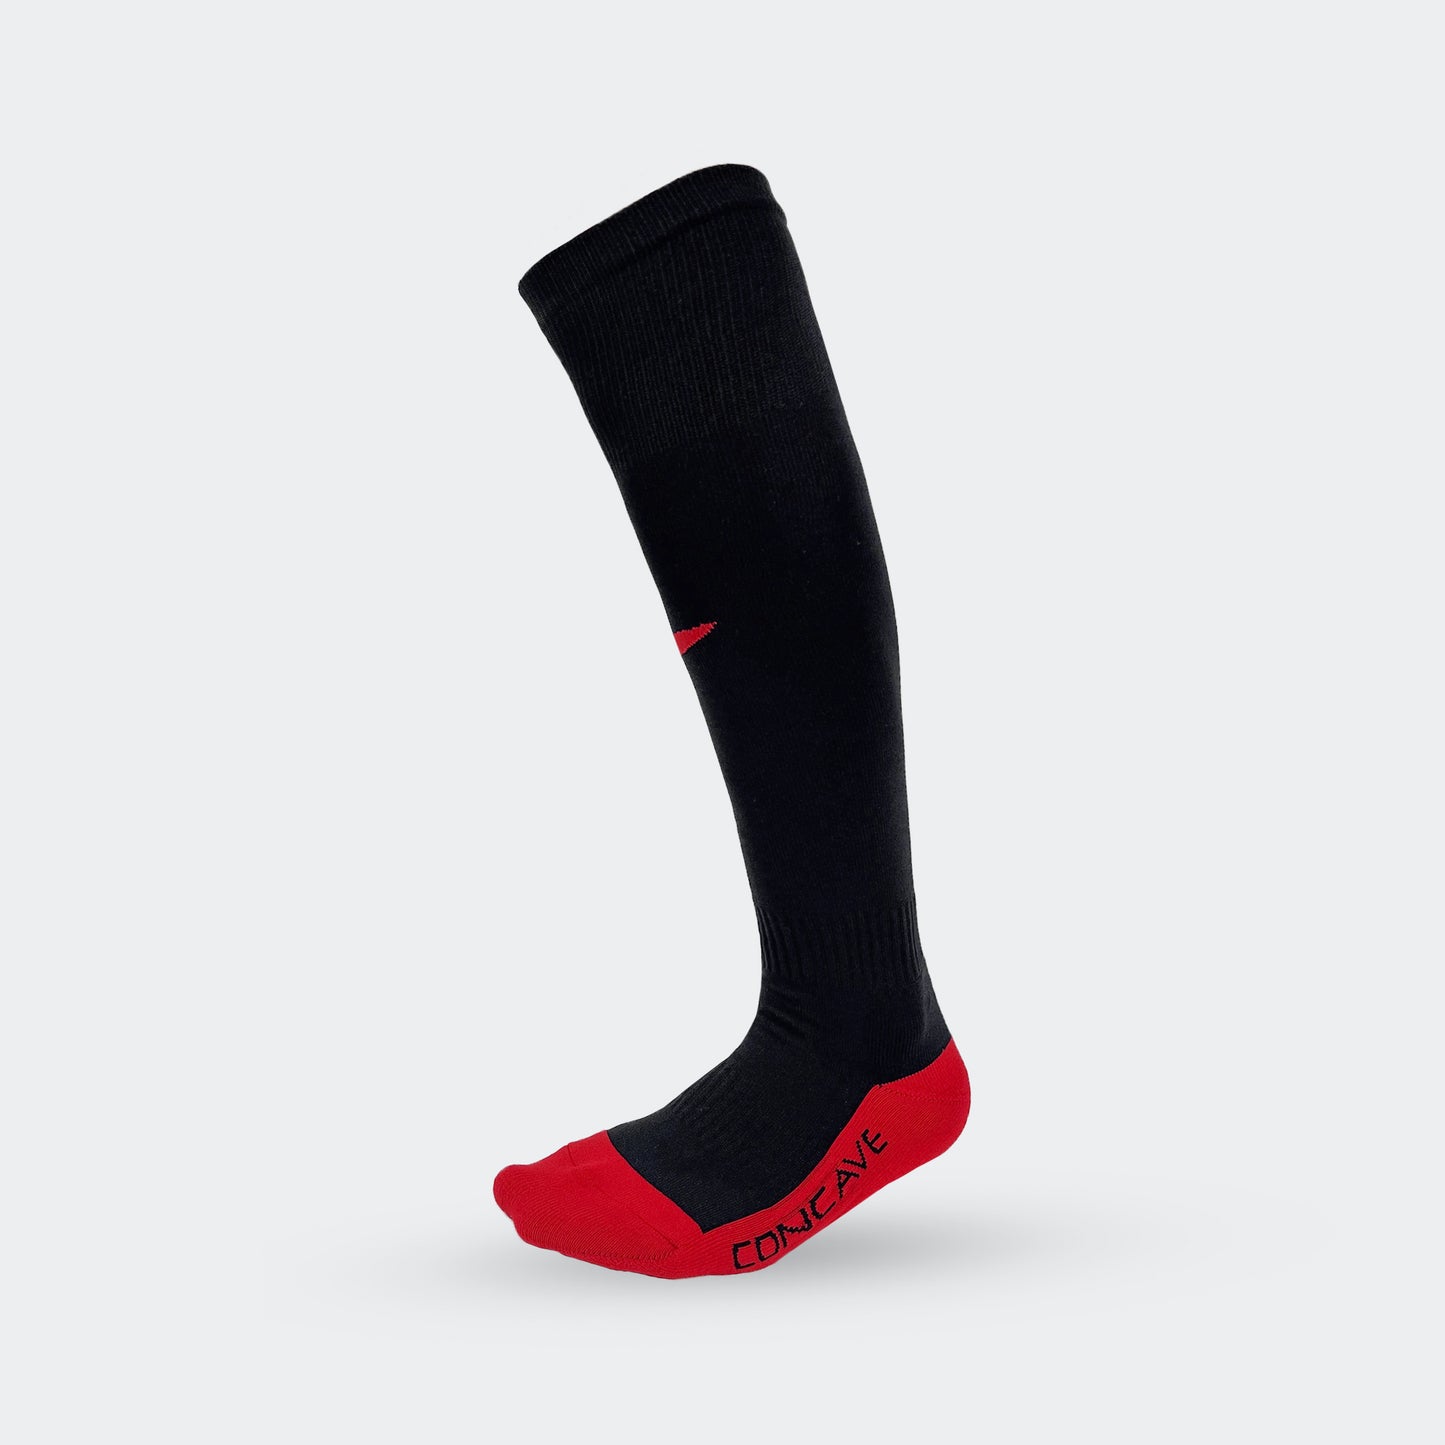 Concave Soccer Socks - Black/Red